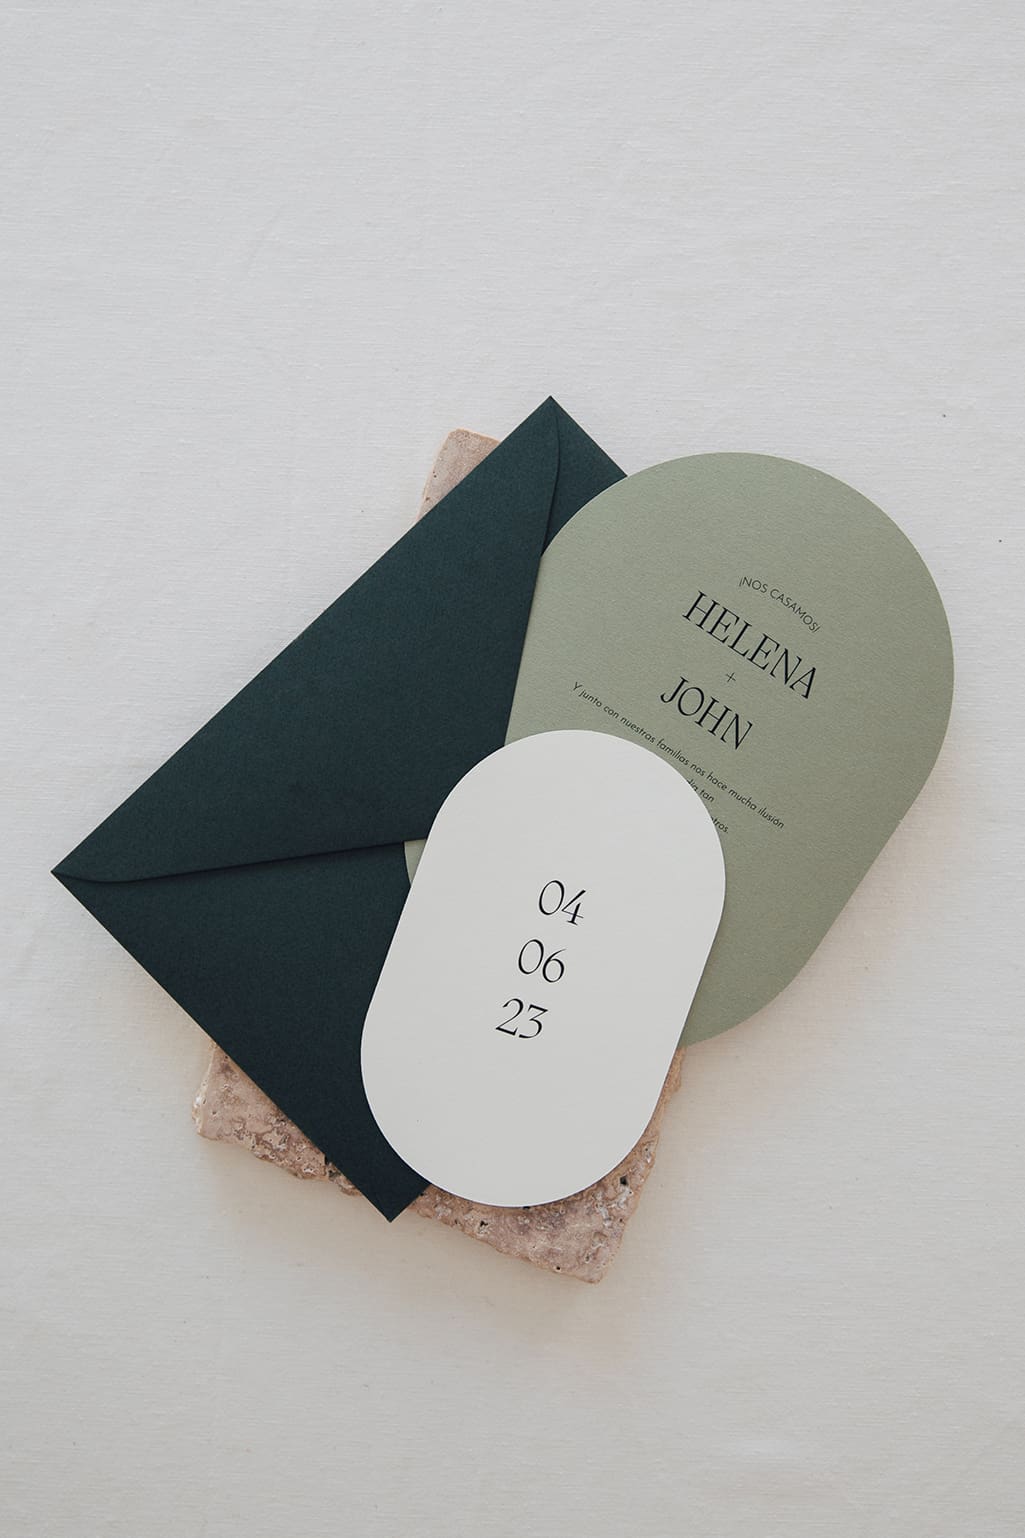 Sobre e invitación de boda personalizado en tonos verdes y tipografía elegante